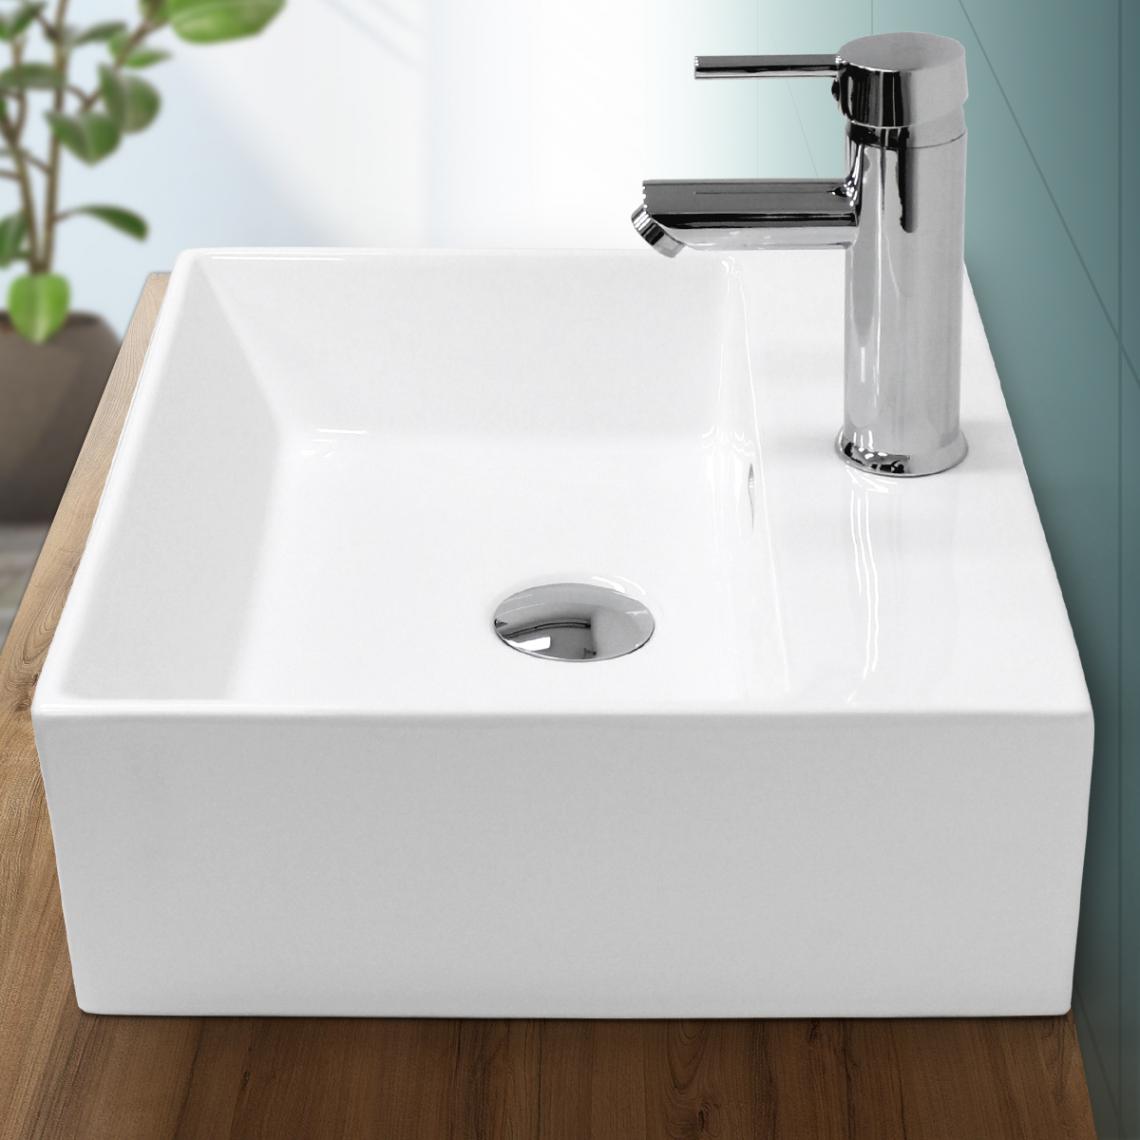 Ecd Germany - Lavabo vasque salle de bain en céramique suspendu / à poser angulaire 415x360mm - Lavabo